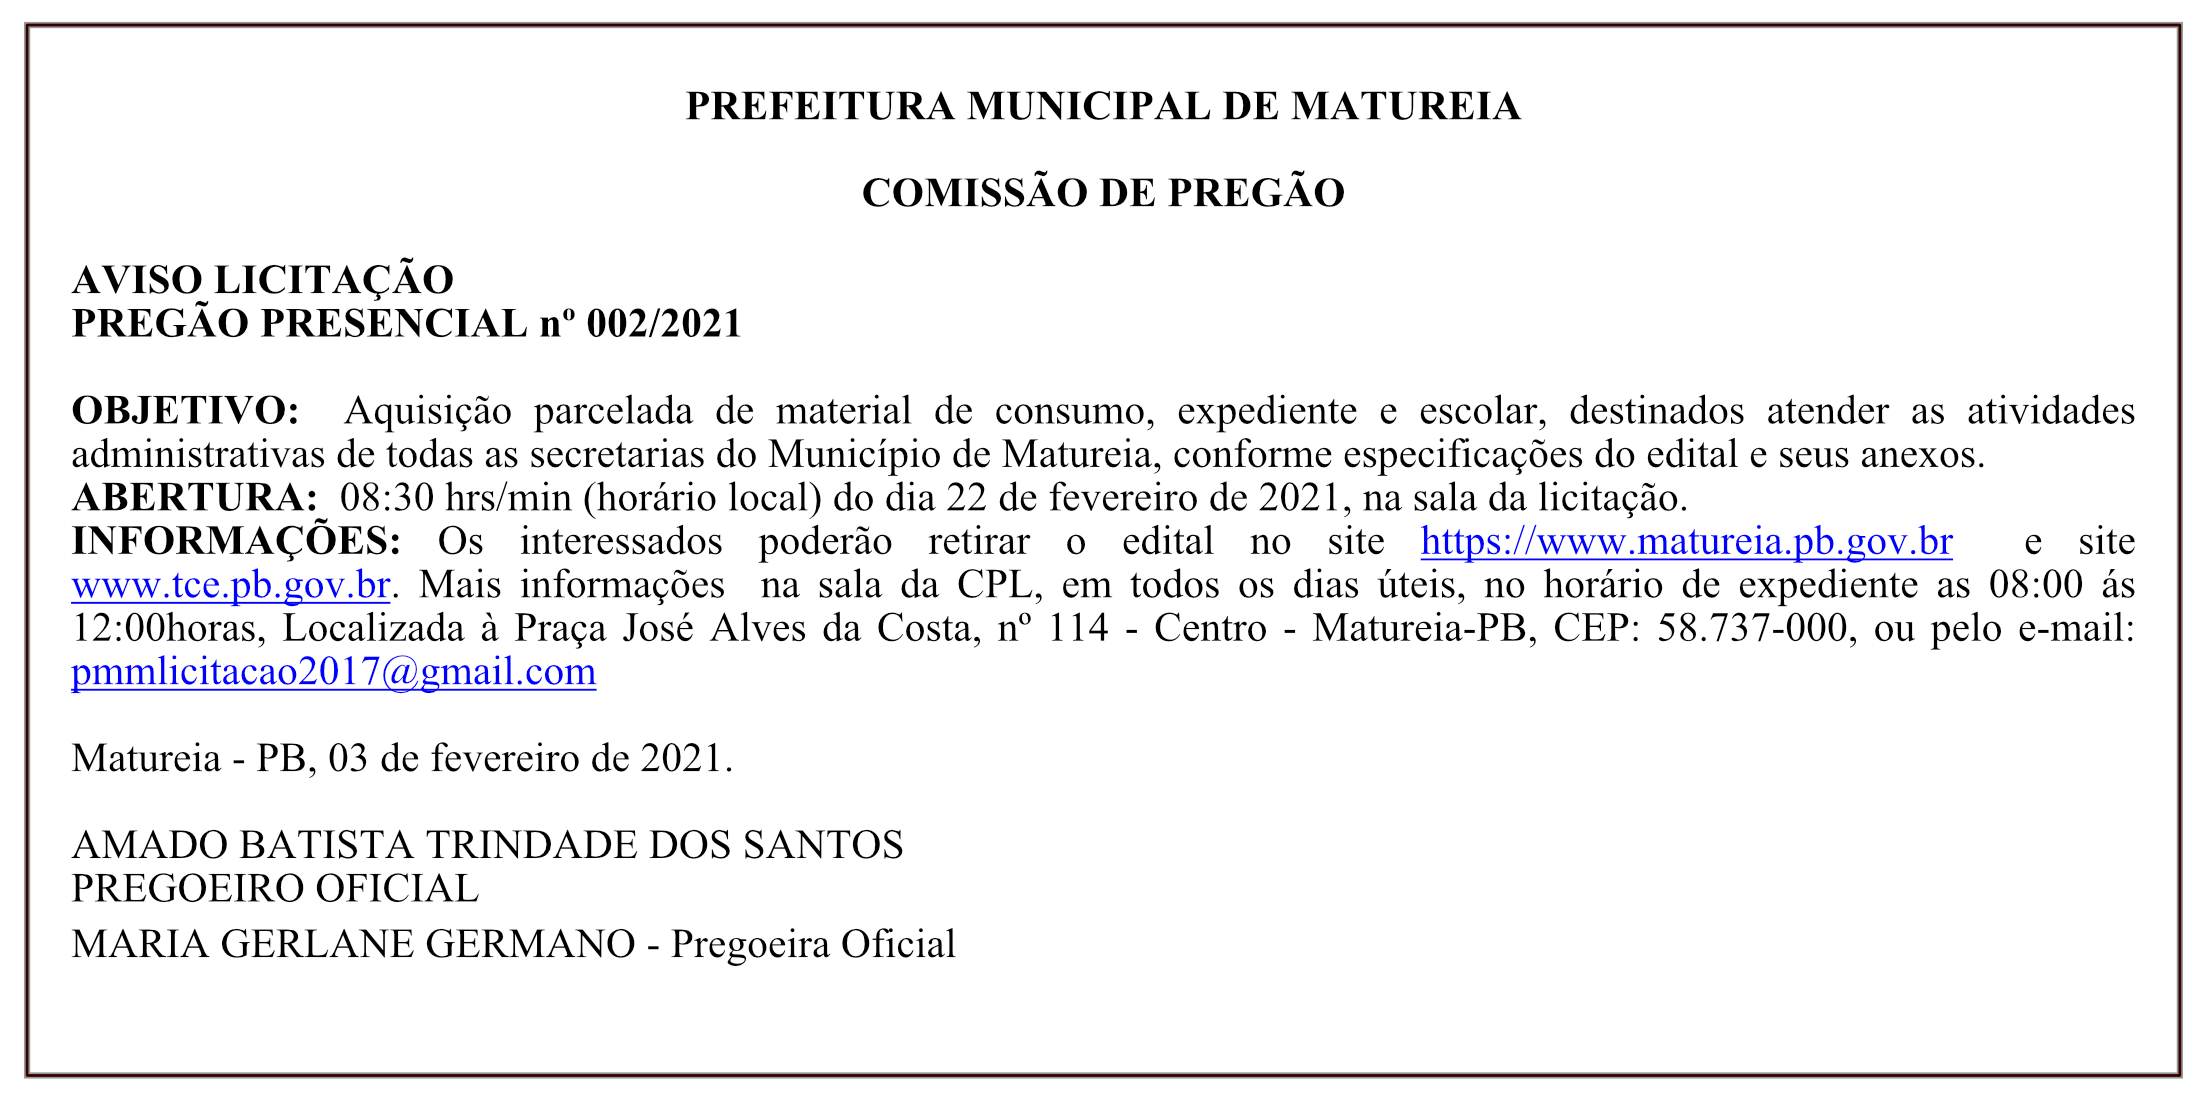 PREFEITURA MUNICIPAL DE MATUREIA – AVISO LICITAÇÃO – PREGÃO PRESENCIAL nº 002/2021